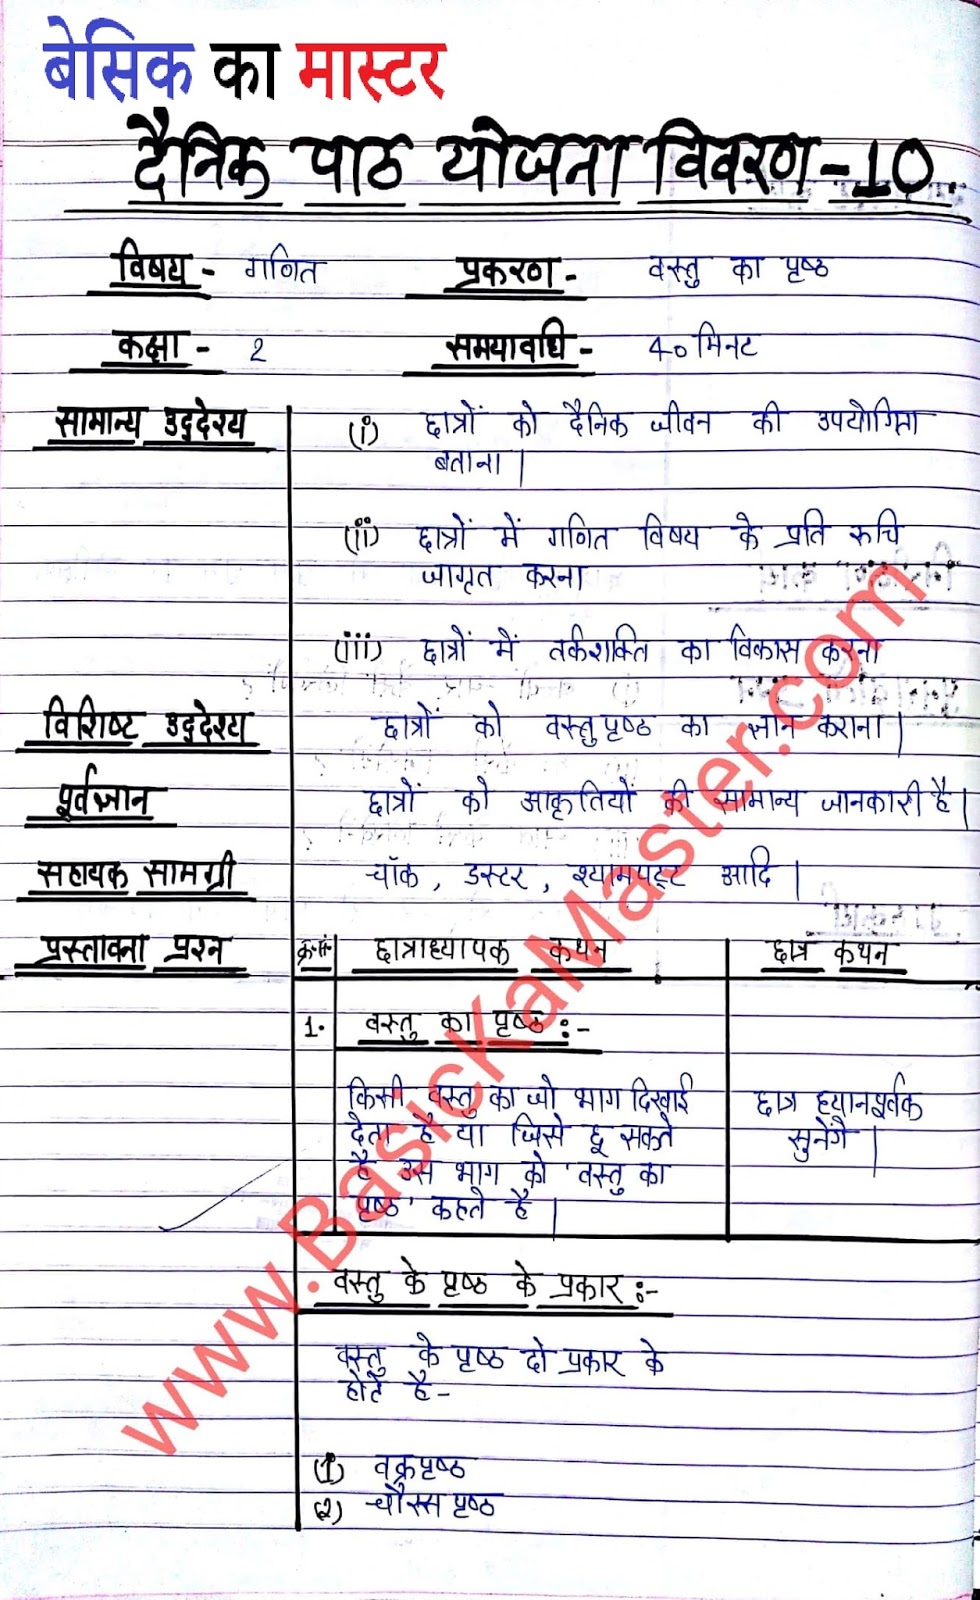 planul de lecție pentru btc în hindi dificultate btc